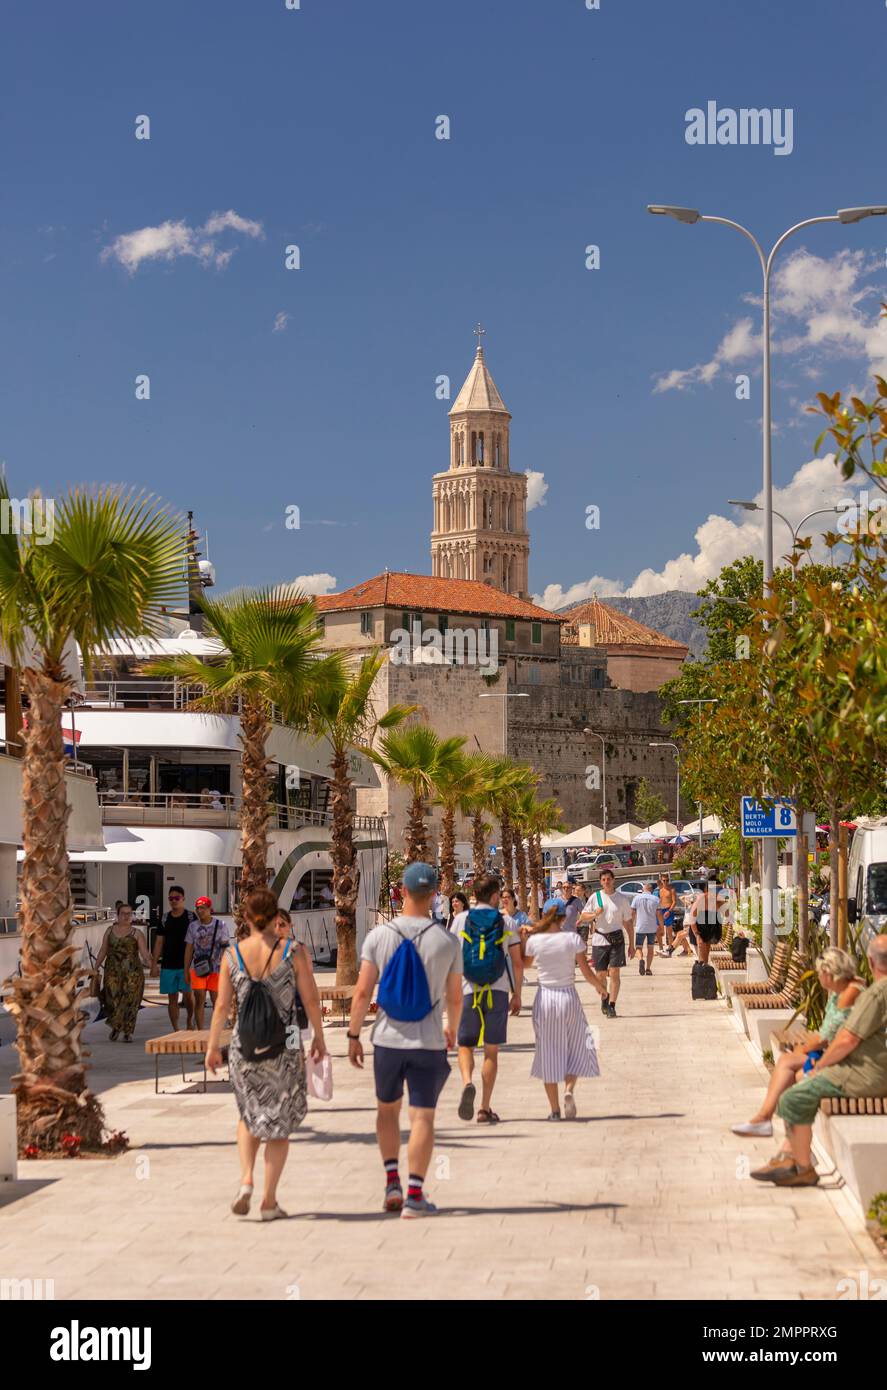 SPLIT, KROATIEN, EUROPA - Touristen laufen am Ufer entlang. In der Ferne befindet sich der Glockenturm der Kathedrale des Heiligen Domnius. Stockfoto